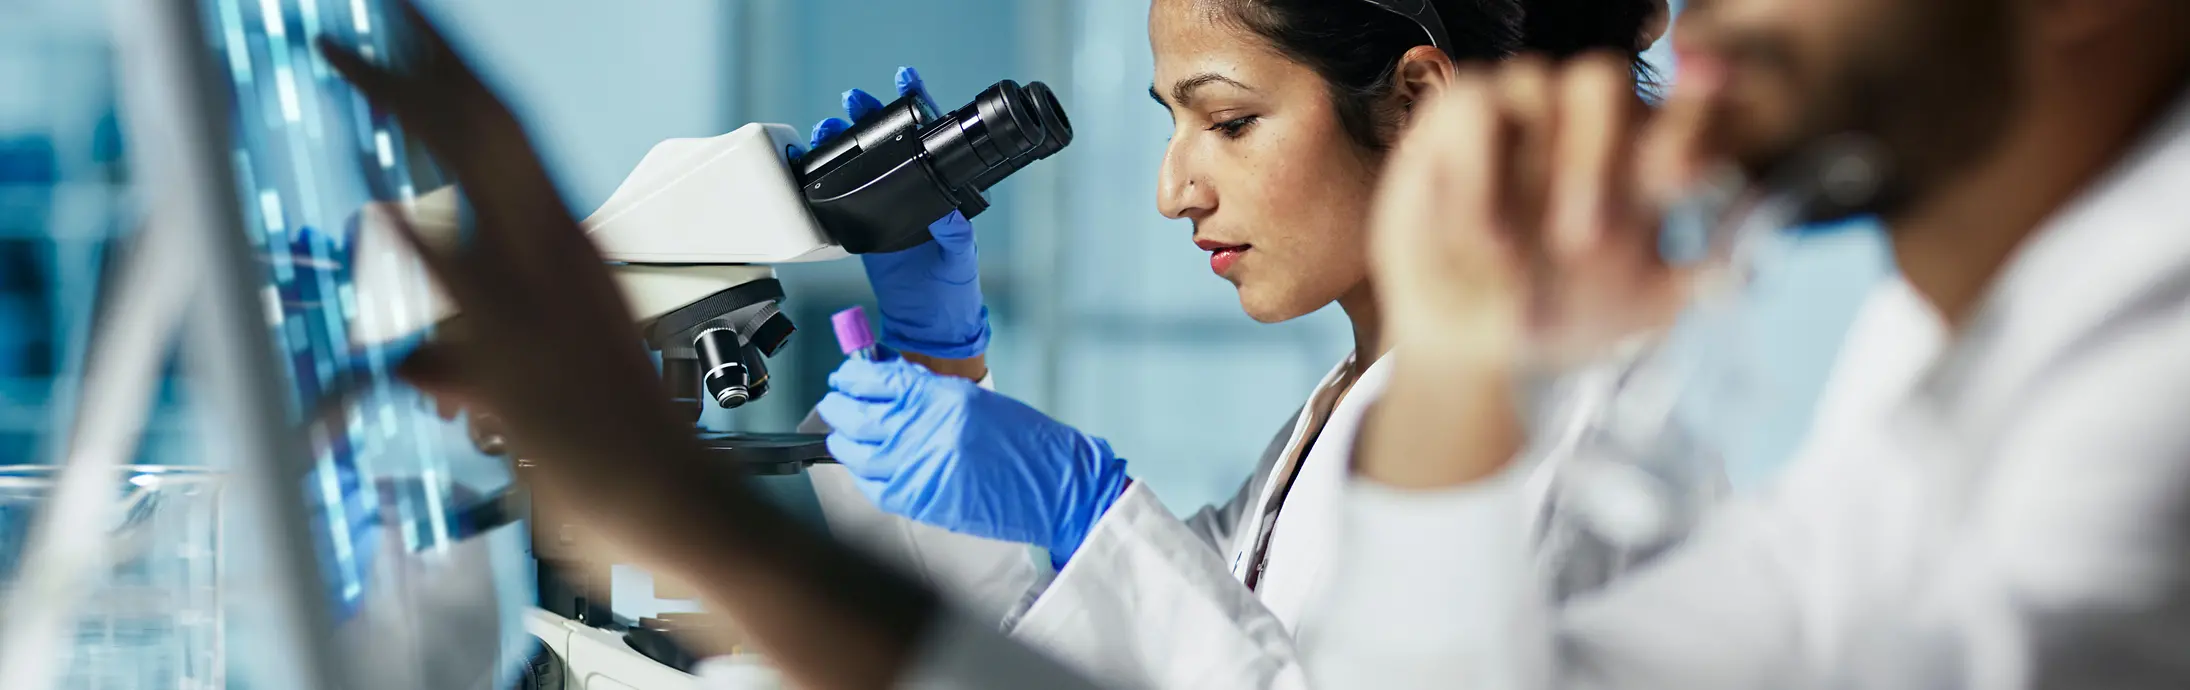 жінка сидить у лабораторії перед мікроскопом, розглядаючи зразок, поруч неї чоловік з бородою, котрий дивиться на екран 